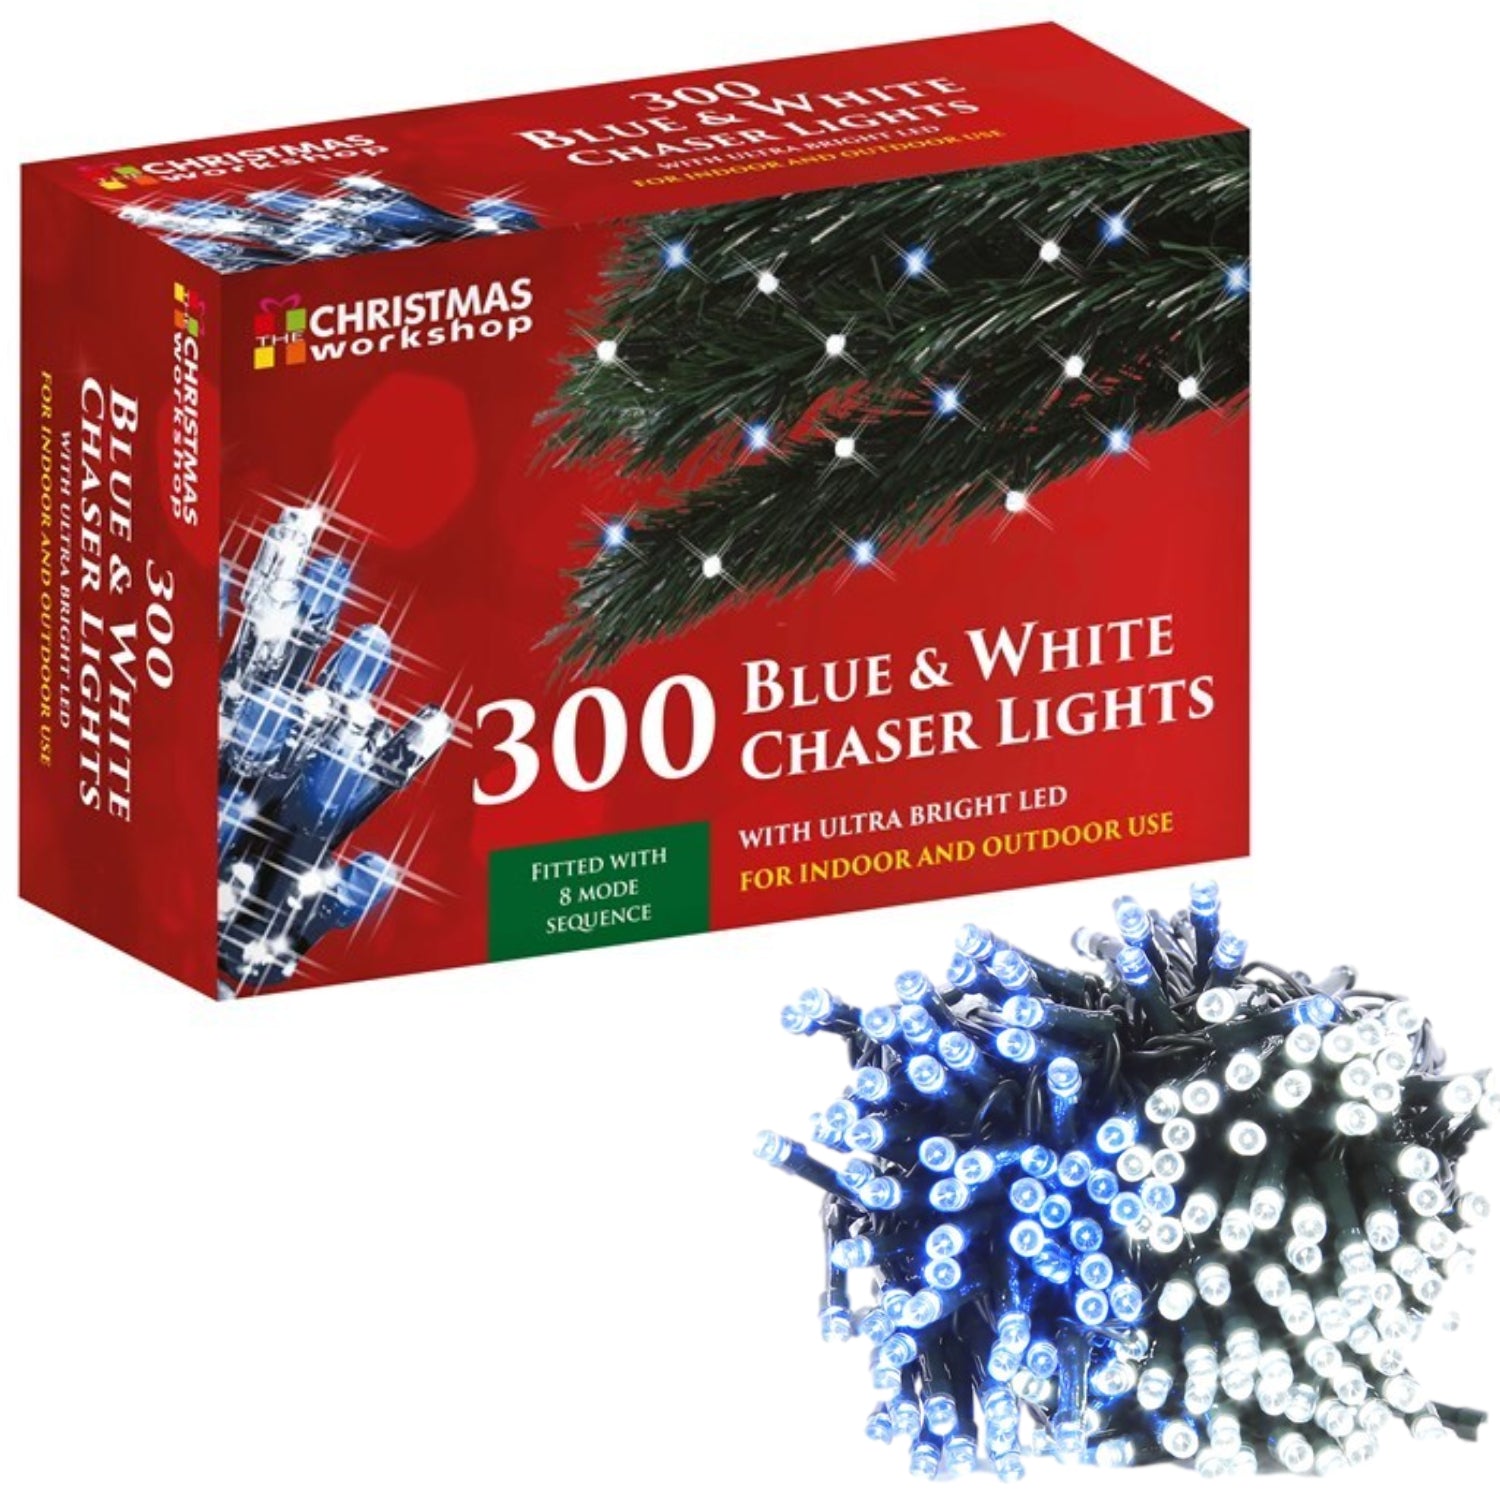 300 LED White & Blue Chaser String Fairy Christmas Lights